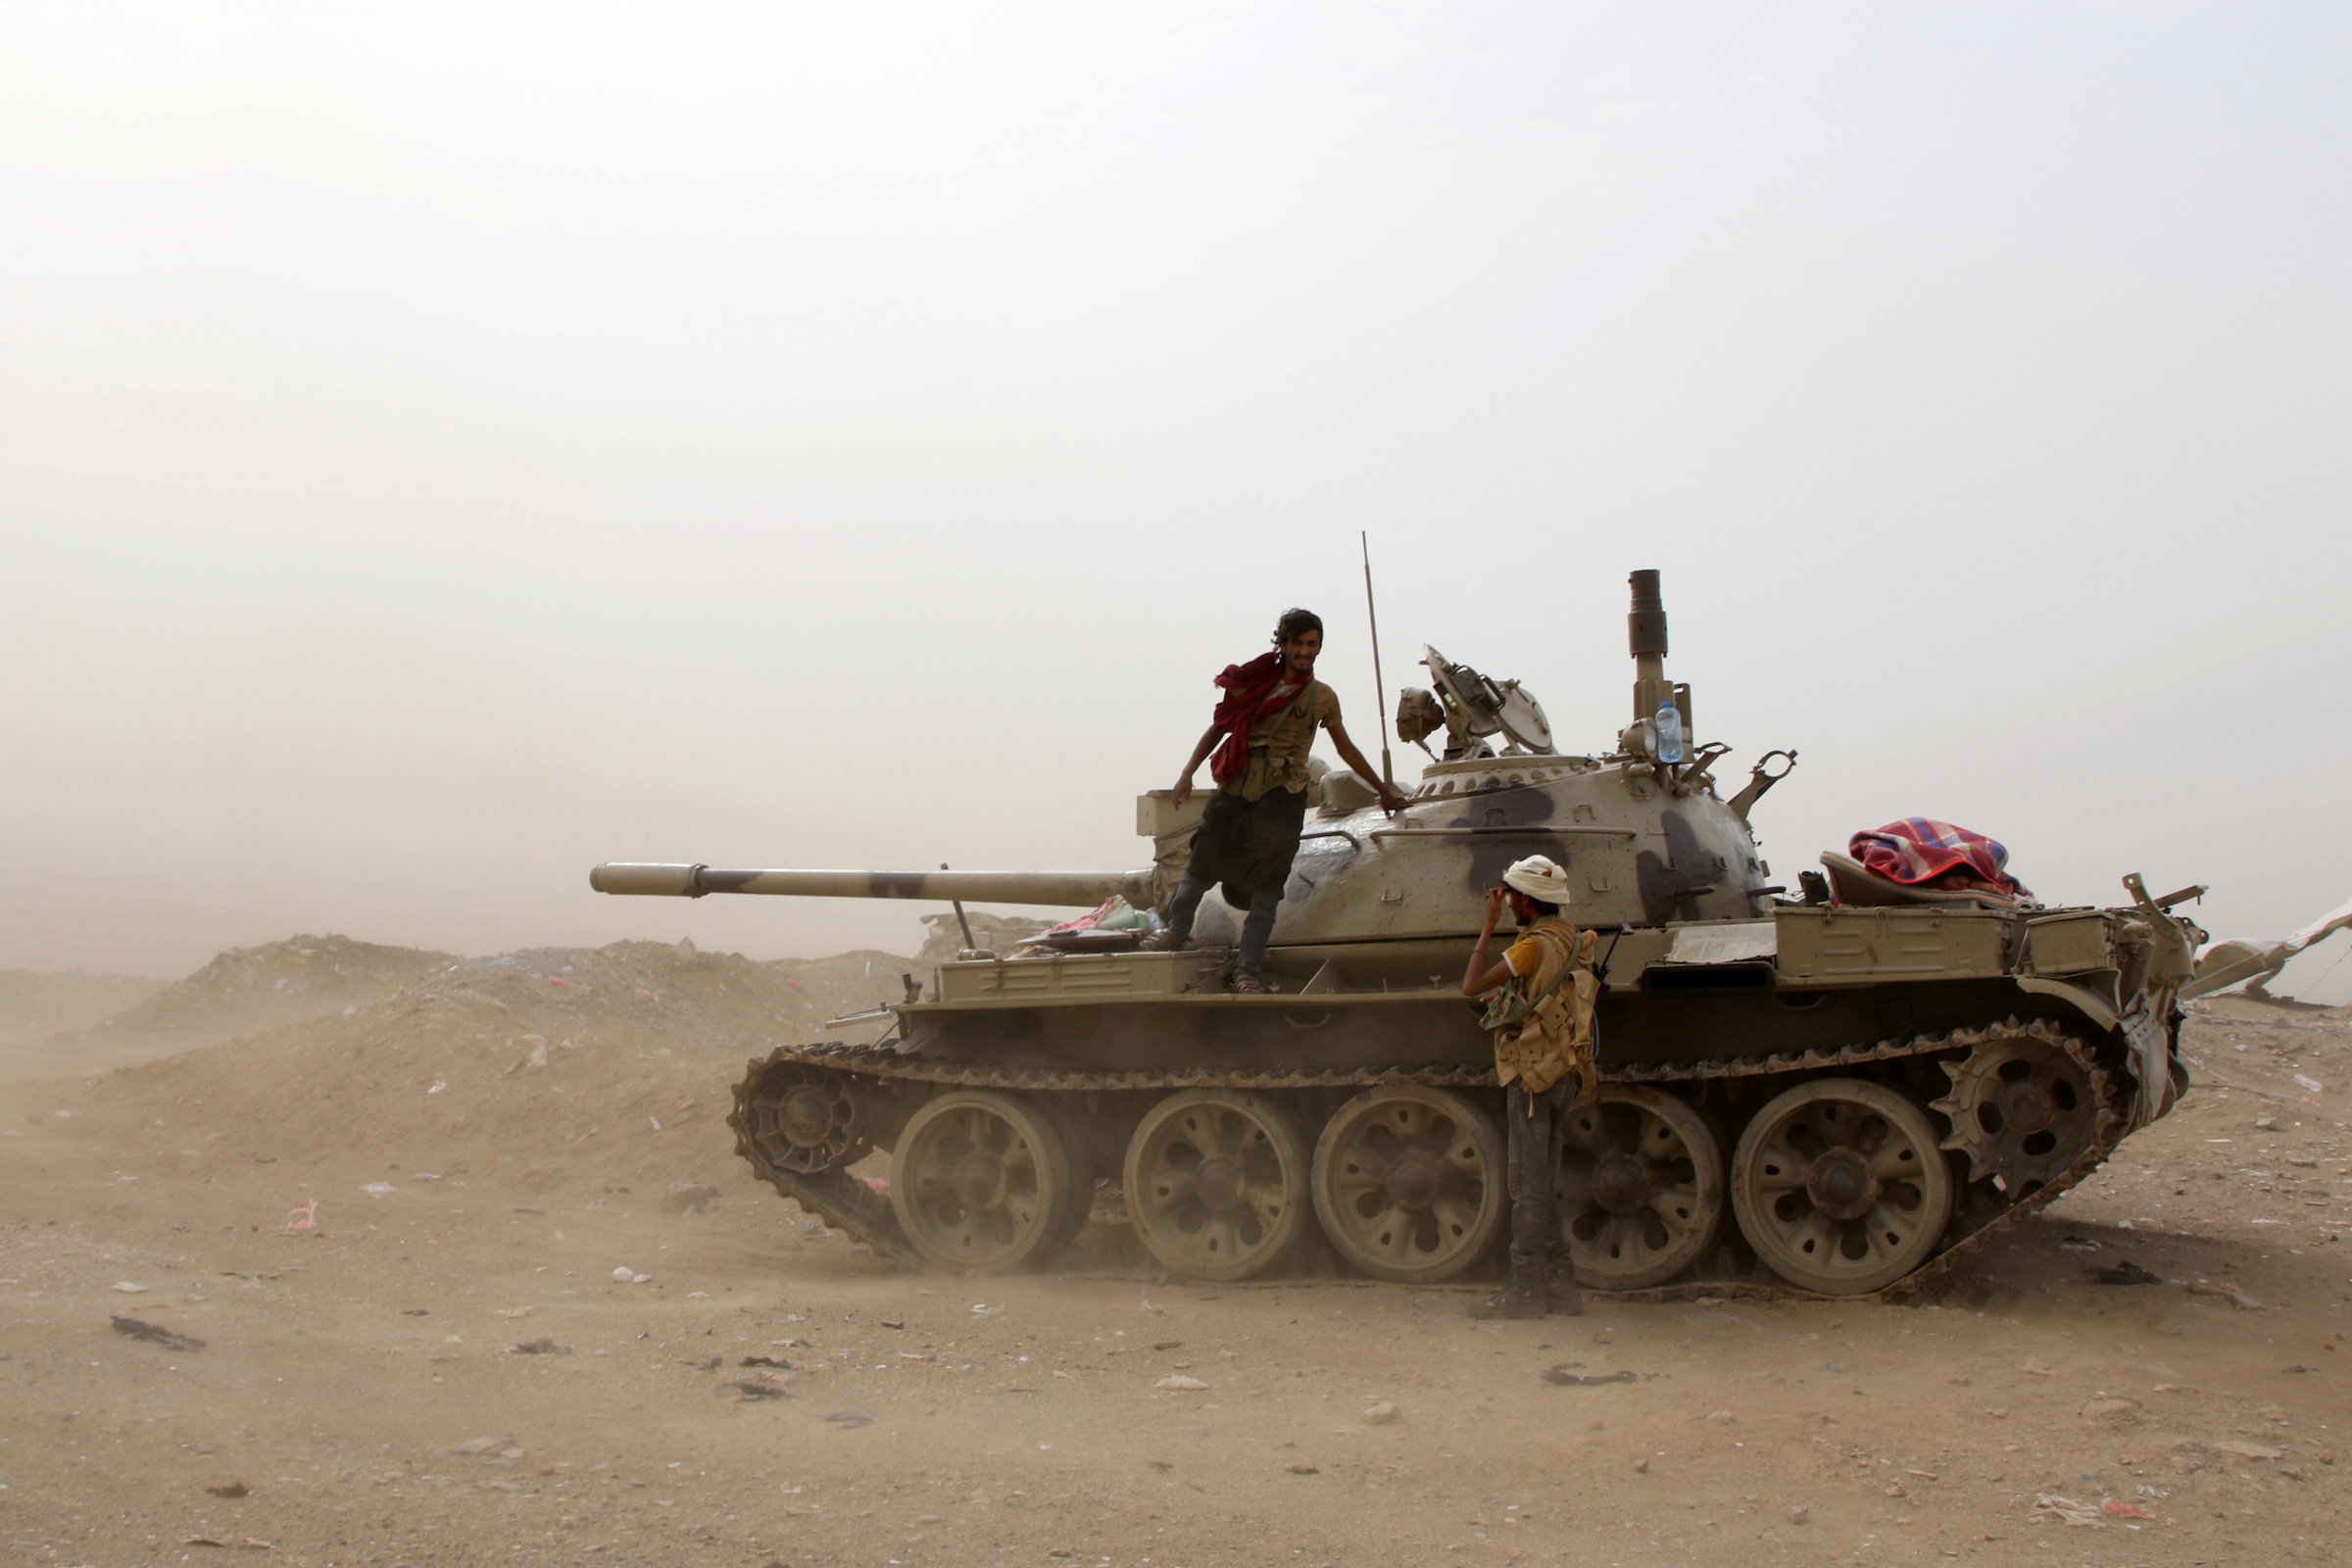 عناصر من القوات اليمنية الانفصالية الجنوبية المدعومة من الإمارات يقفون بجانب دبابة خلال مواجهات مع القوات الحكومية في عدن، اليمن، 10 أغسطس/آب 2019.